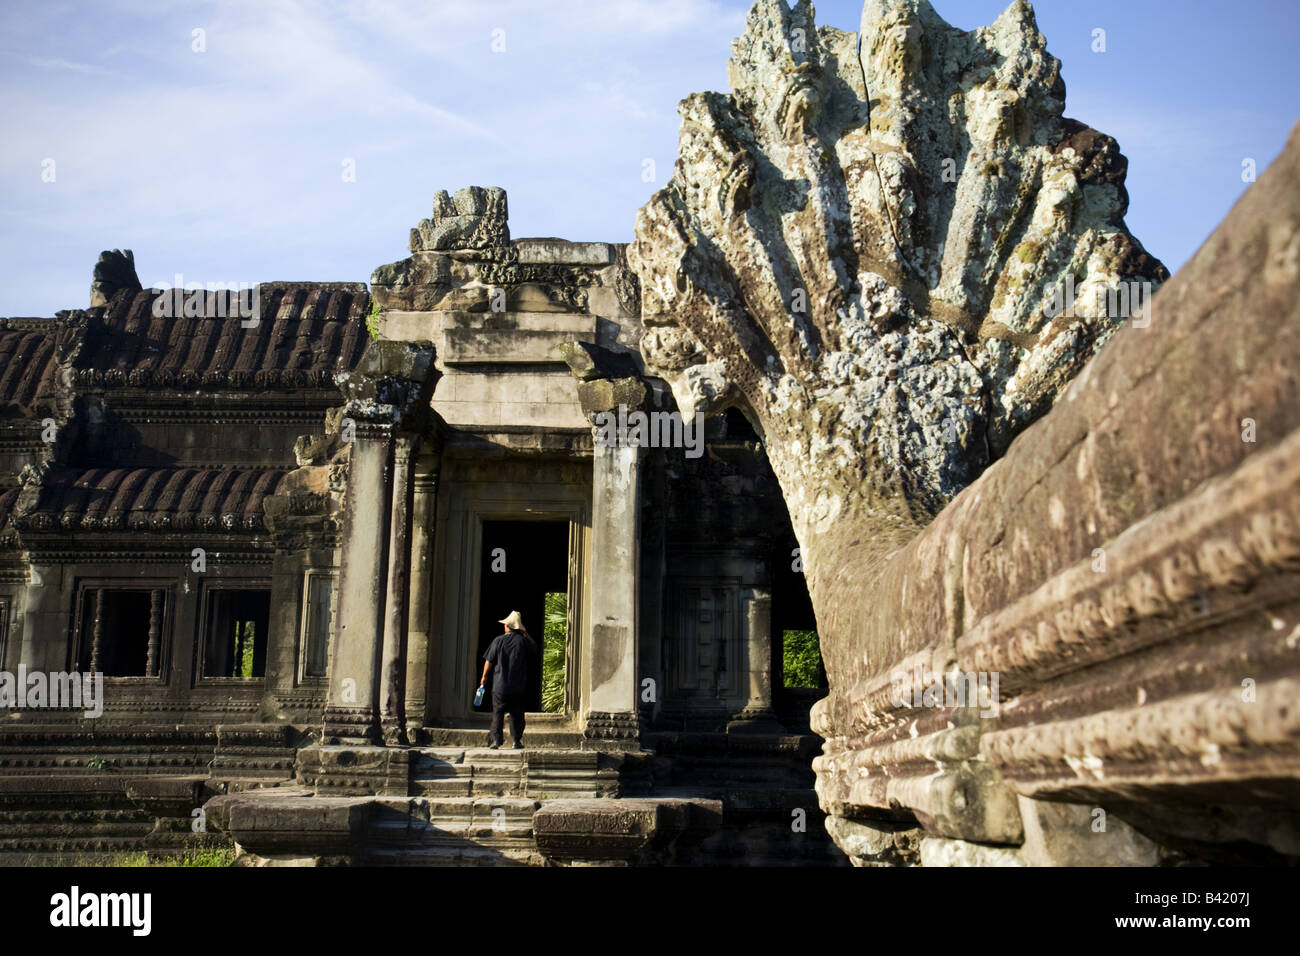 Tempel von Angkor Wat Angkor Website Kambodscha Stockfoto